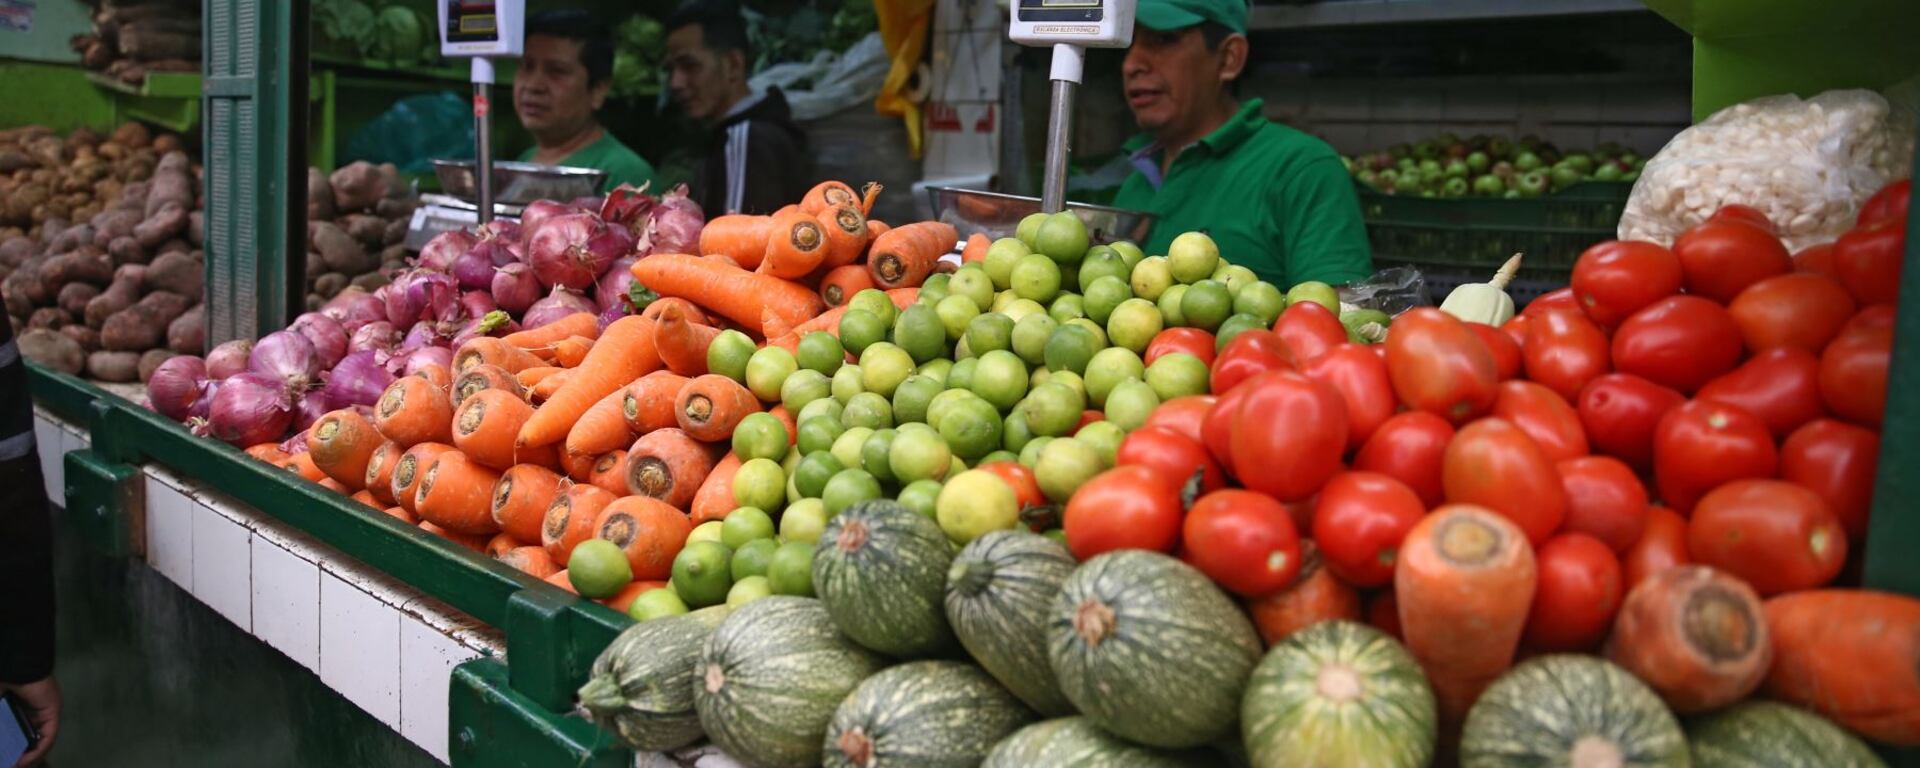 Inflación bajó en abril, ¿se verá un descenso en los precios de alimentos?